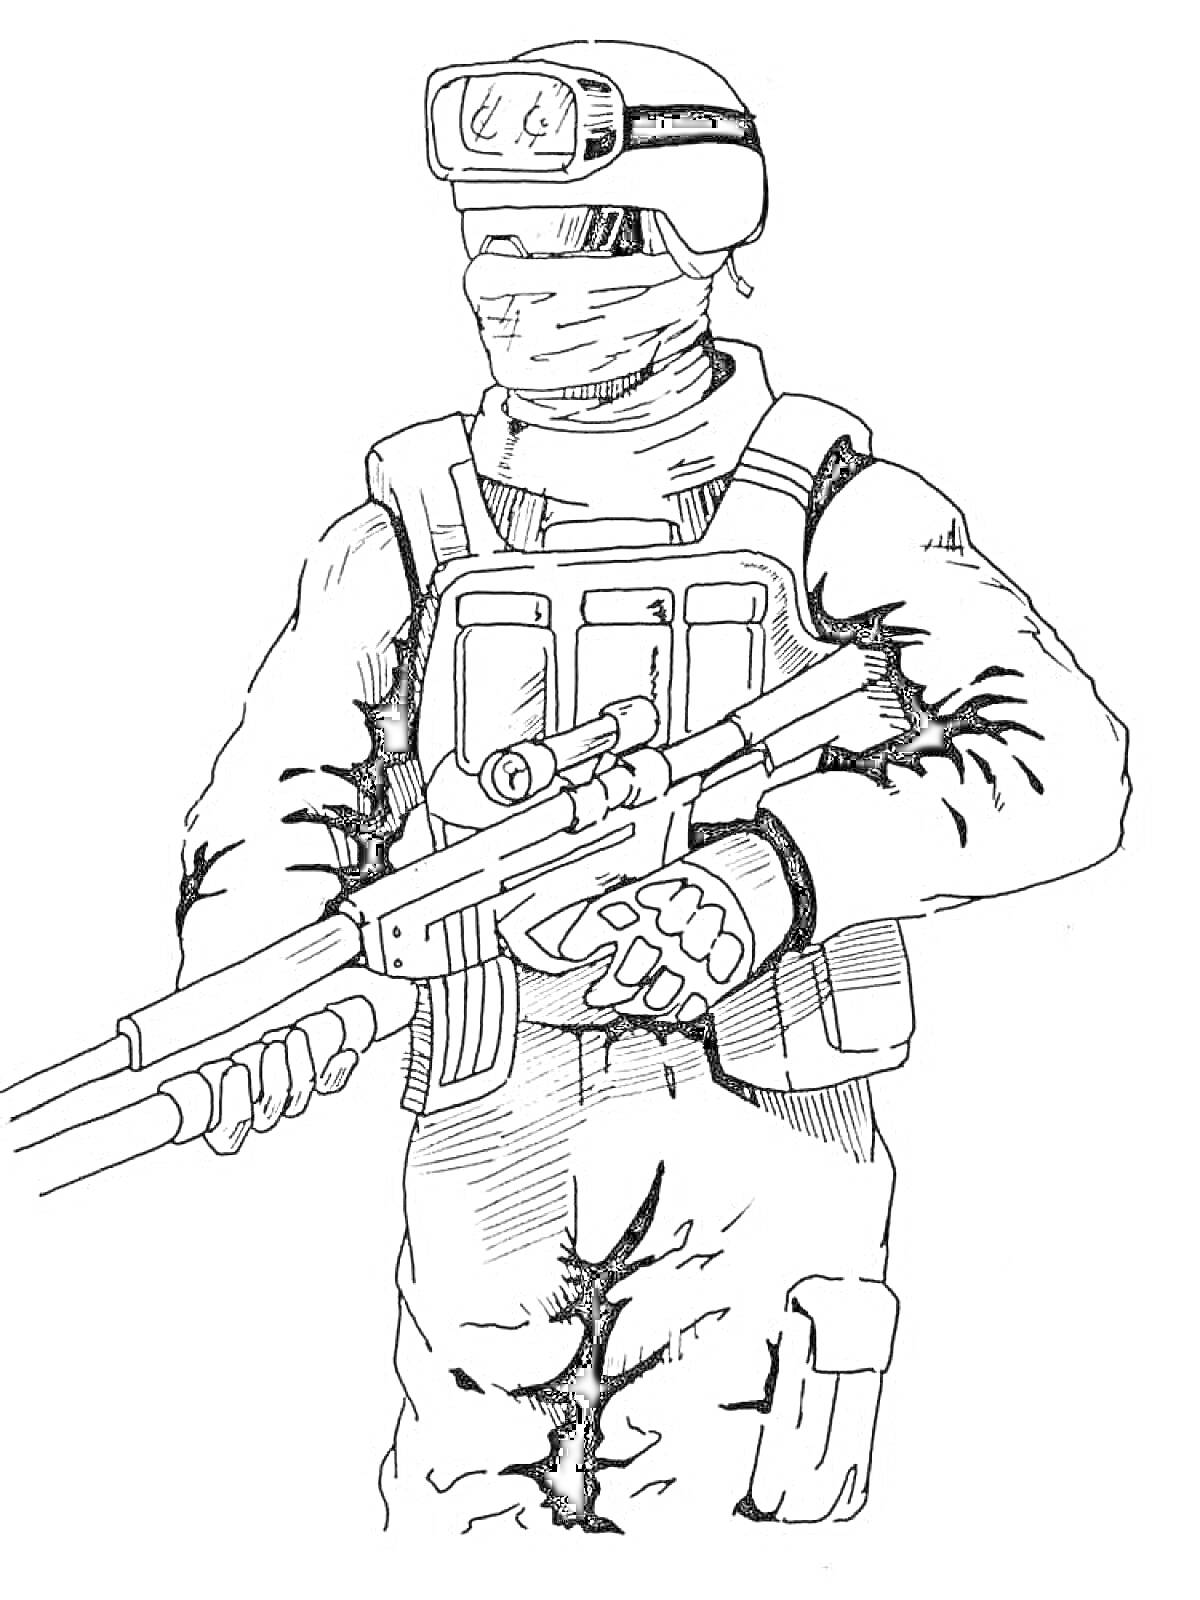 Солдат с винтовкой и прицелом, одет в шлем и бронежилет, куртка с перчатками